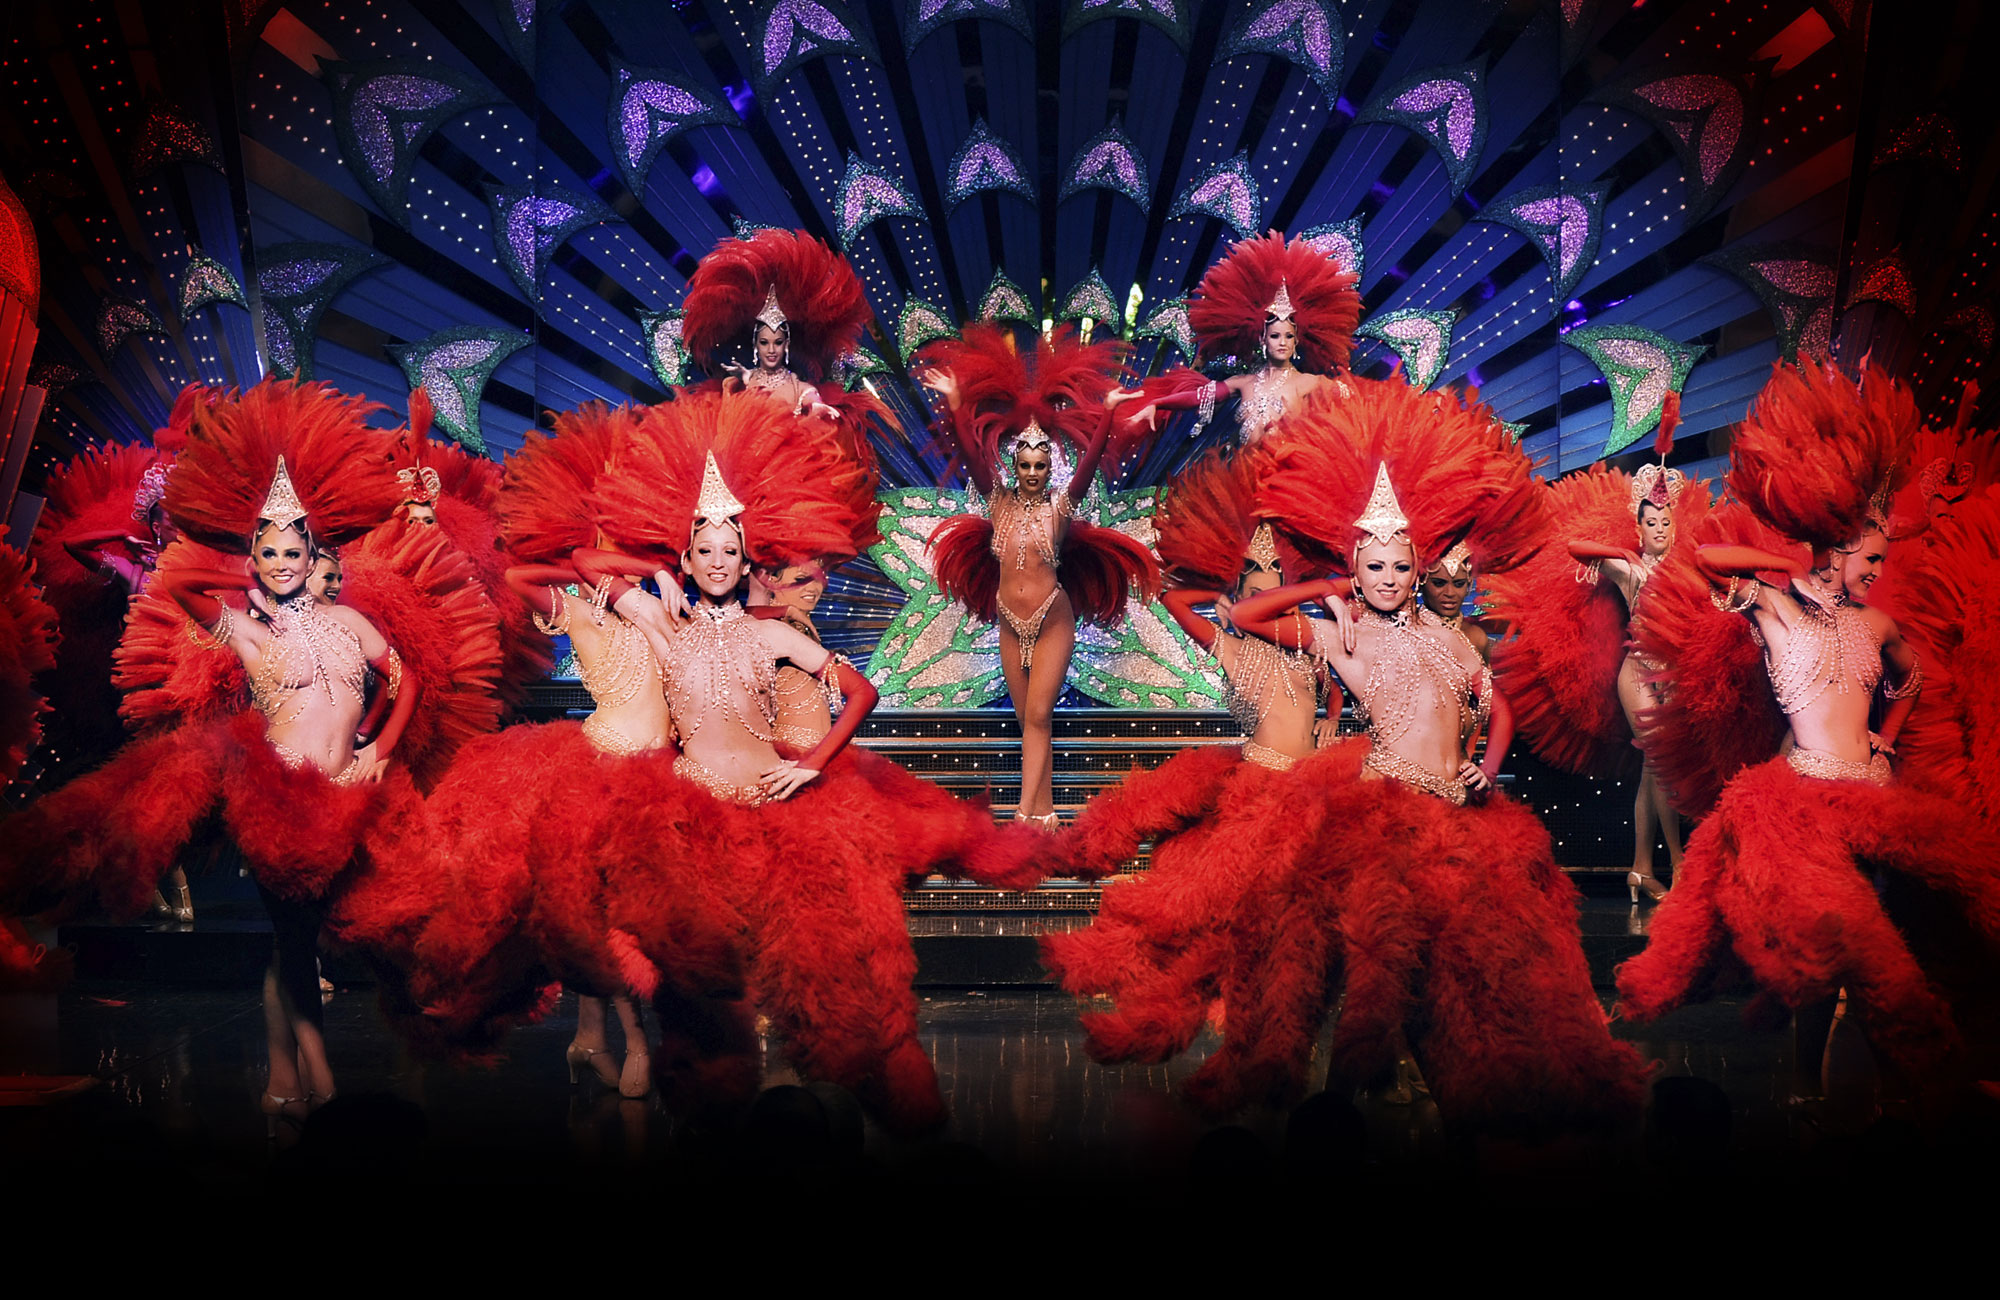 Féerie show - Moulin Rouge (Site Officiel) - Moulin Rouge (Site ...